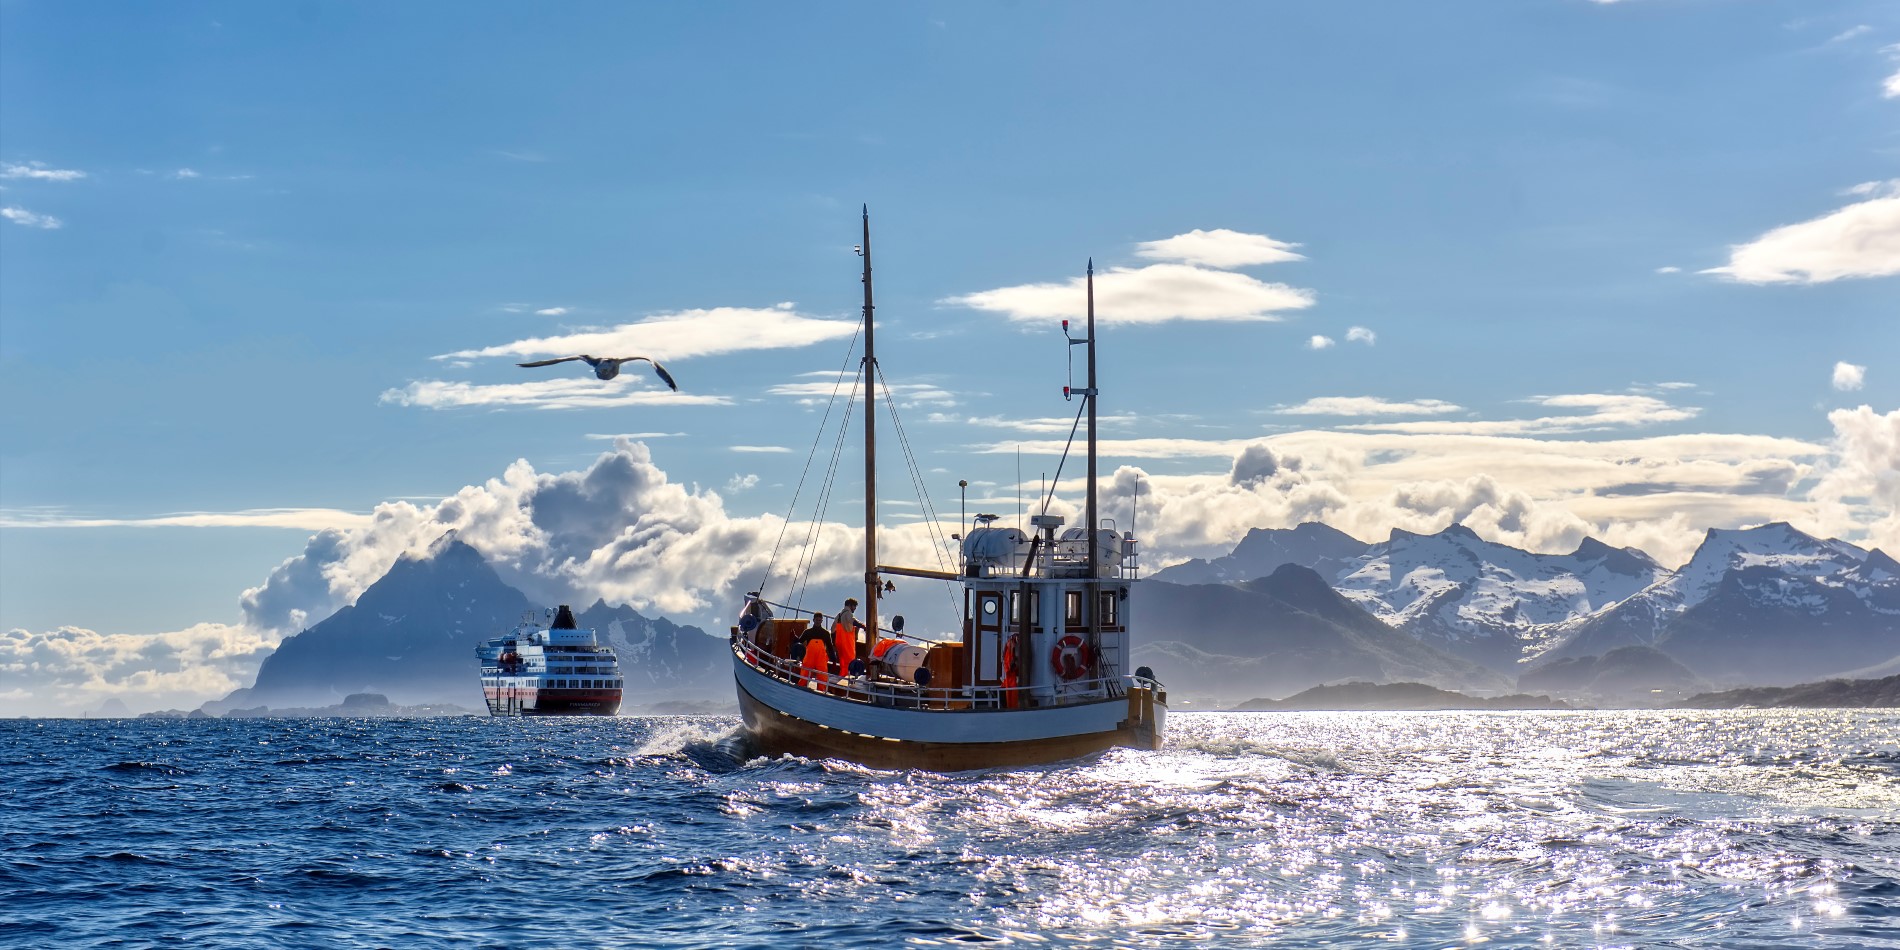 Et af Hurtigrutens skibe forsvinder ud i horisonten med en fiskerbåd bag sig 